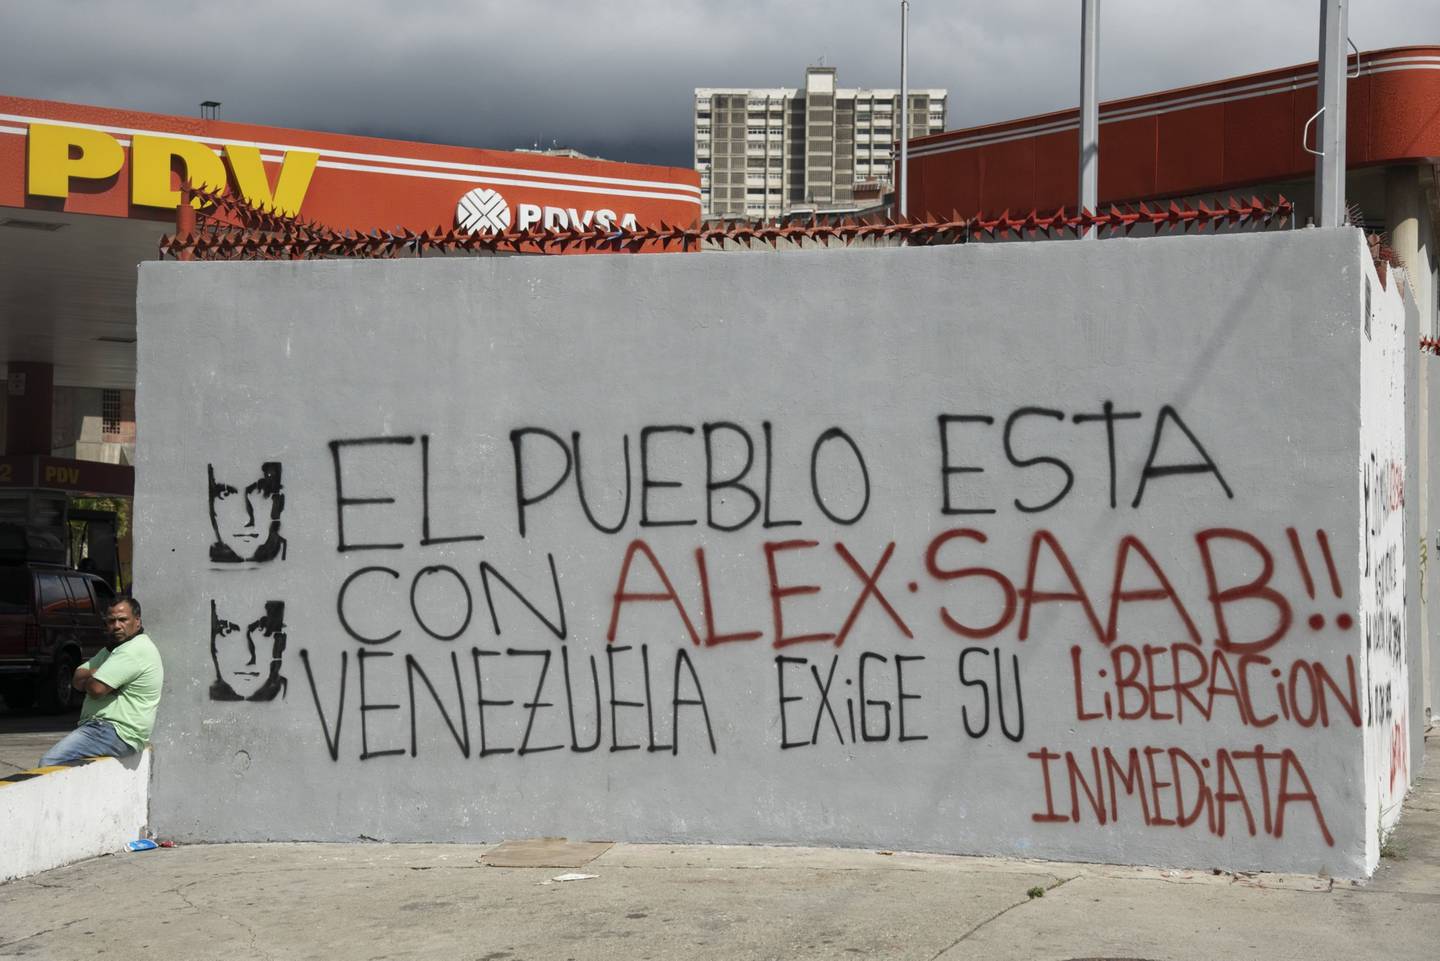 Una persona sentada junto a una pared con un grafiti que dice: "¡El pueblo está con Alex Saab! Venezuela exige su liberación inmediata", en Caracas, Venezuela, el jueves 4 de febrero de 2021.dfd